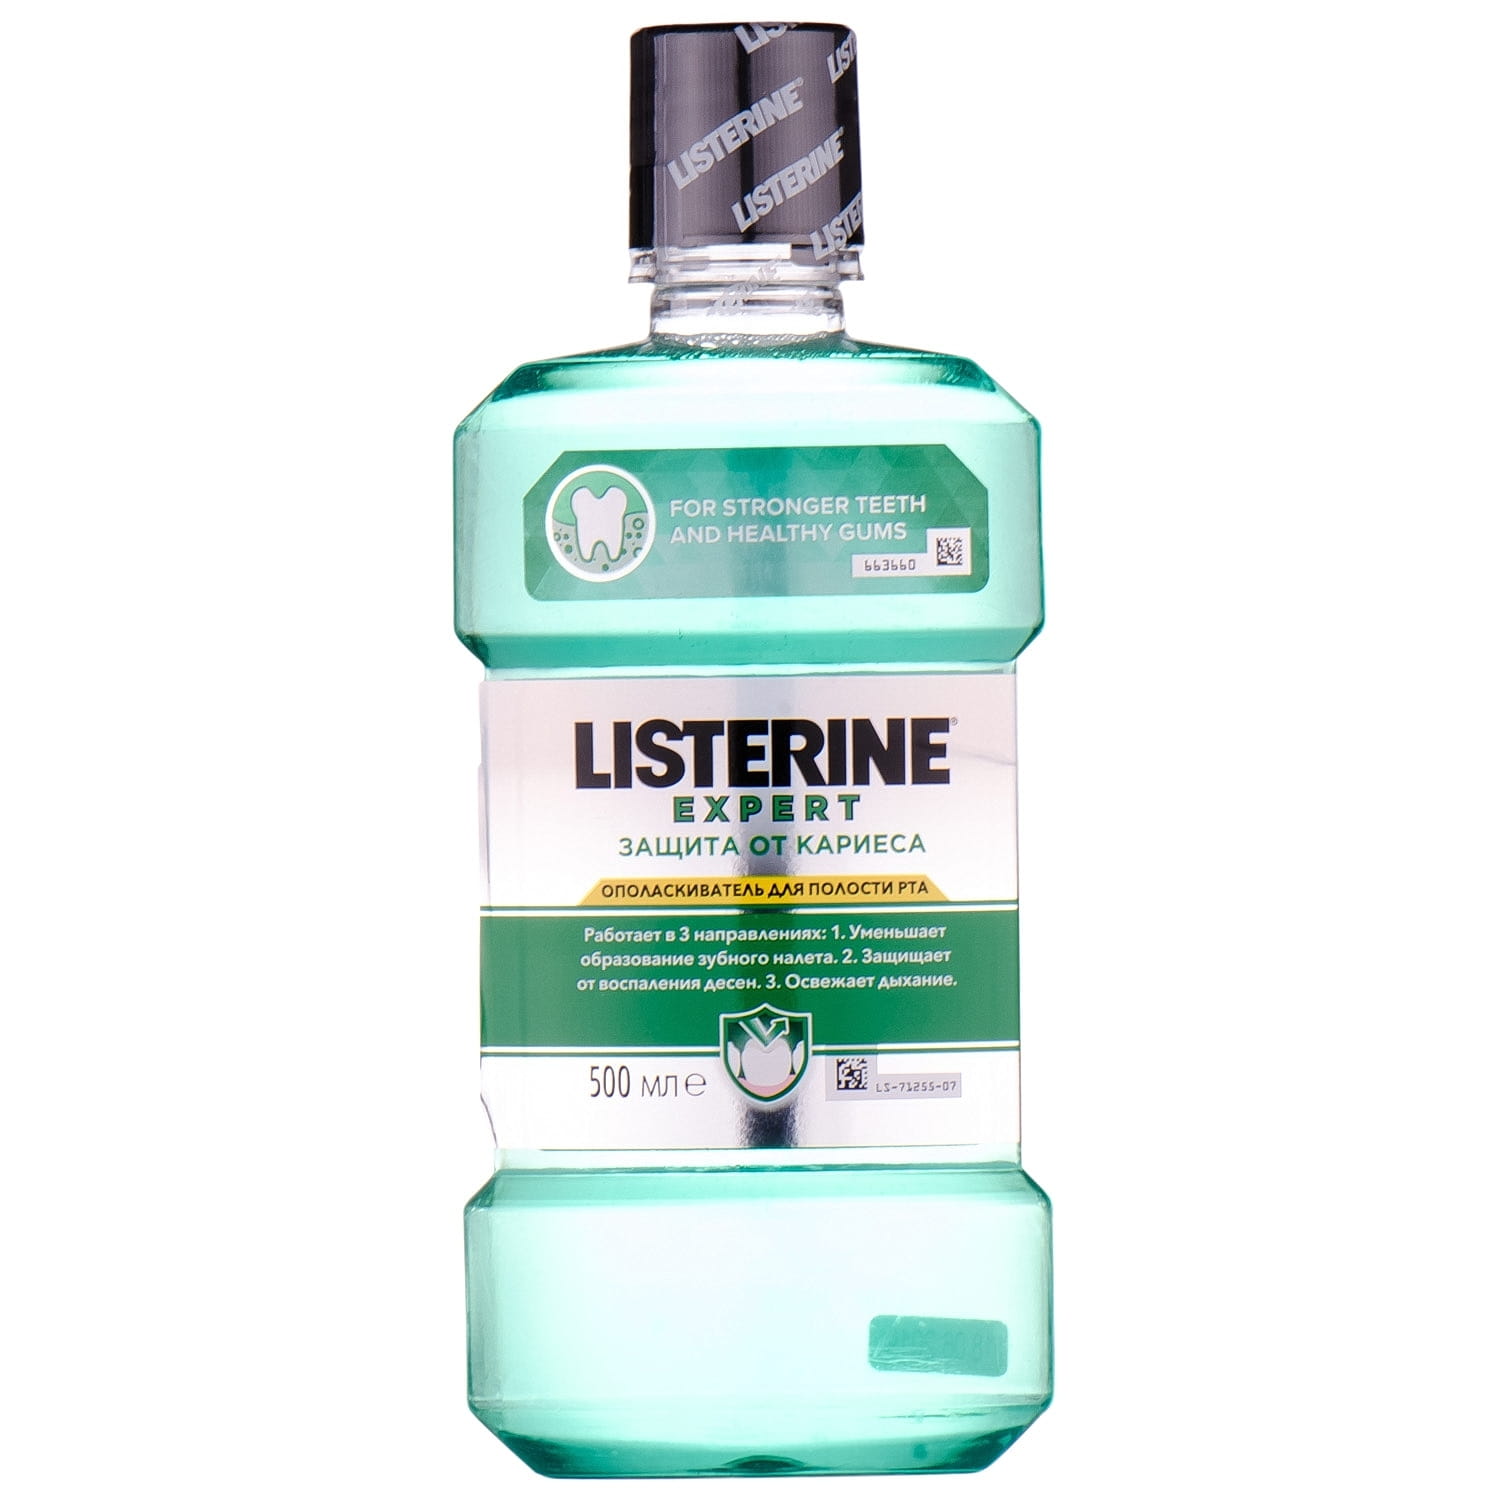 Ополаскиватель для рта listerine. Листерин ополаскиватель. Ополаскиватель для рта Листерин. Ополаскиватель для полости рта Listerine от кариеса, 500 мл Listerine 3574661337227. Листерин защита от кариеса.